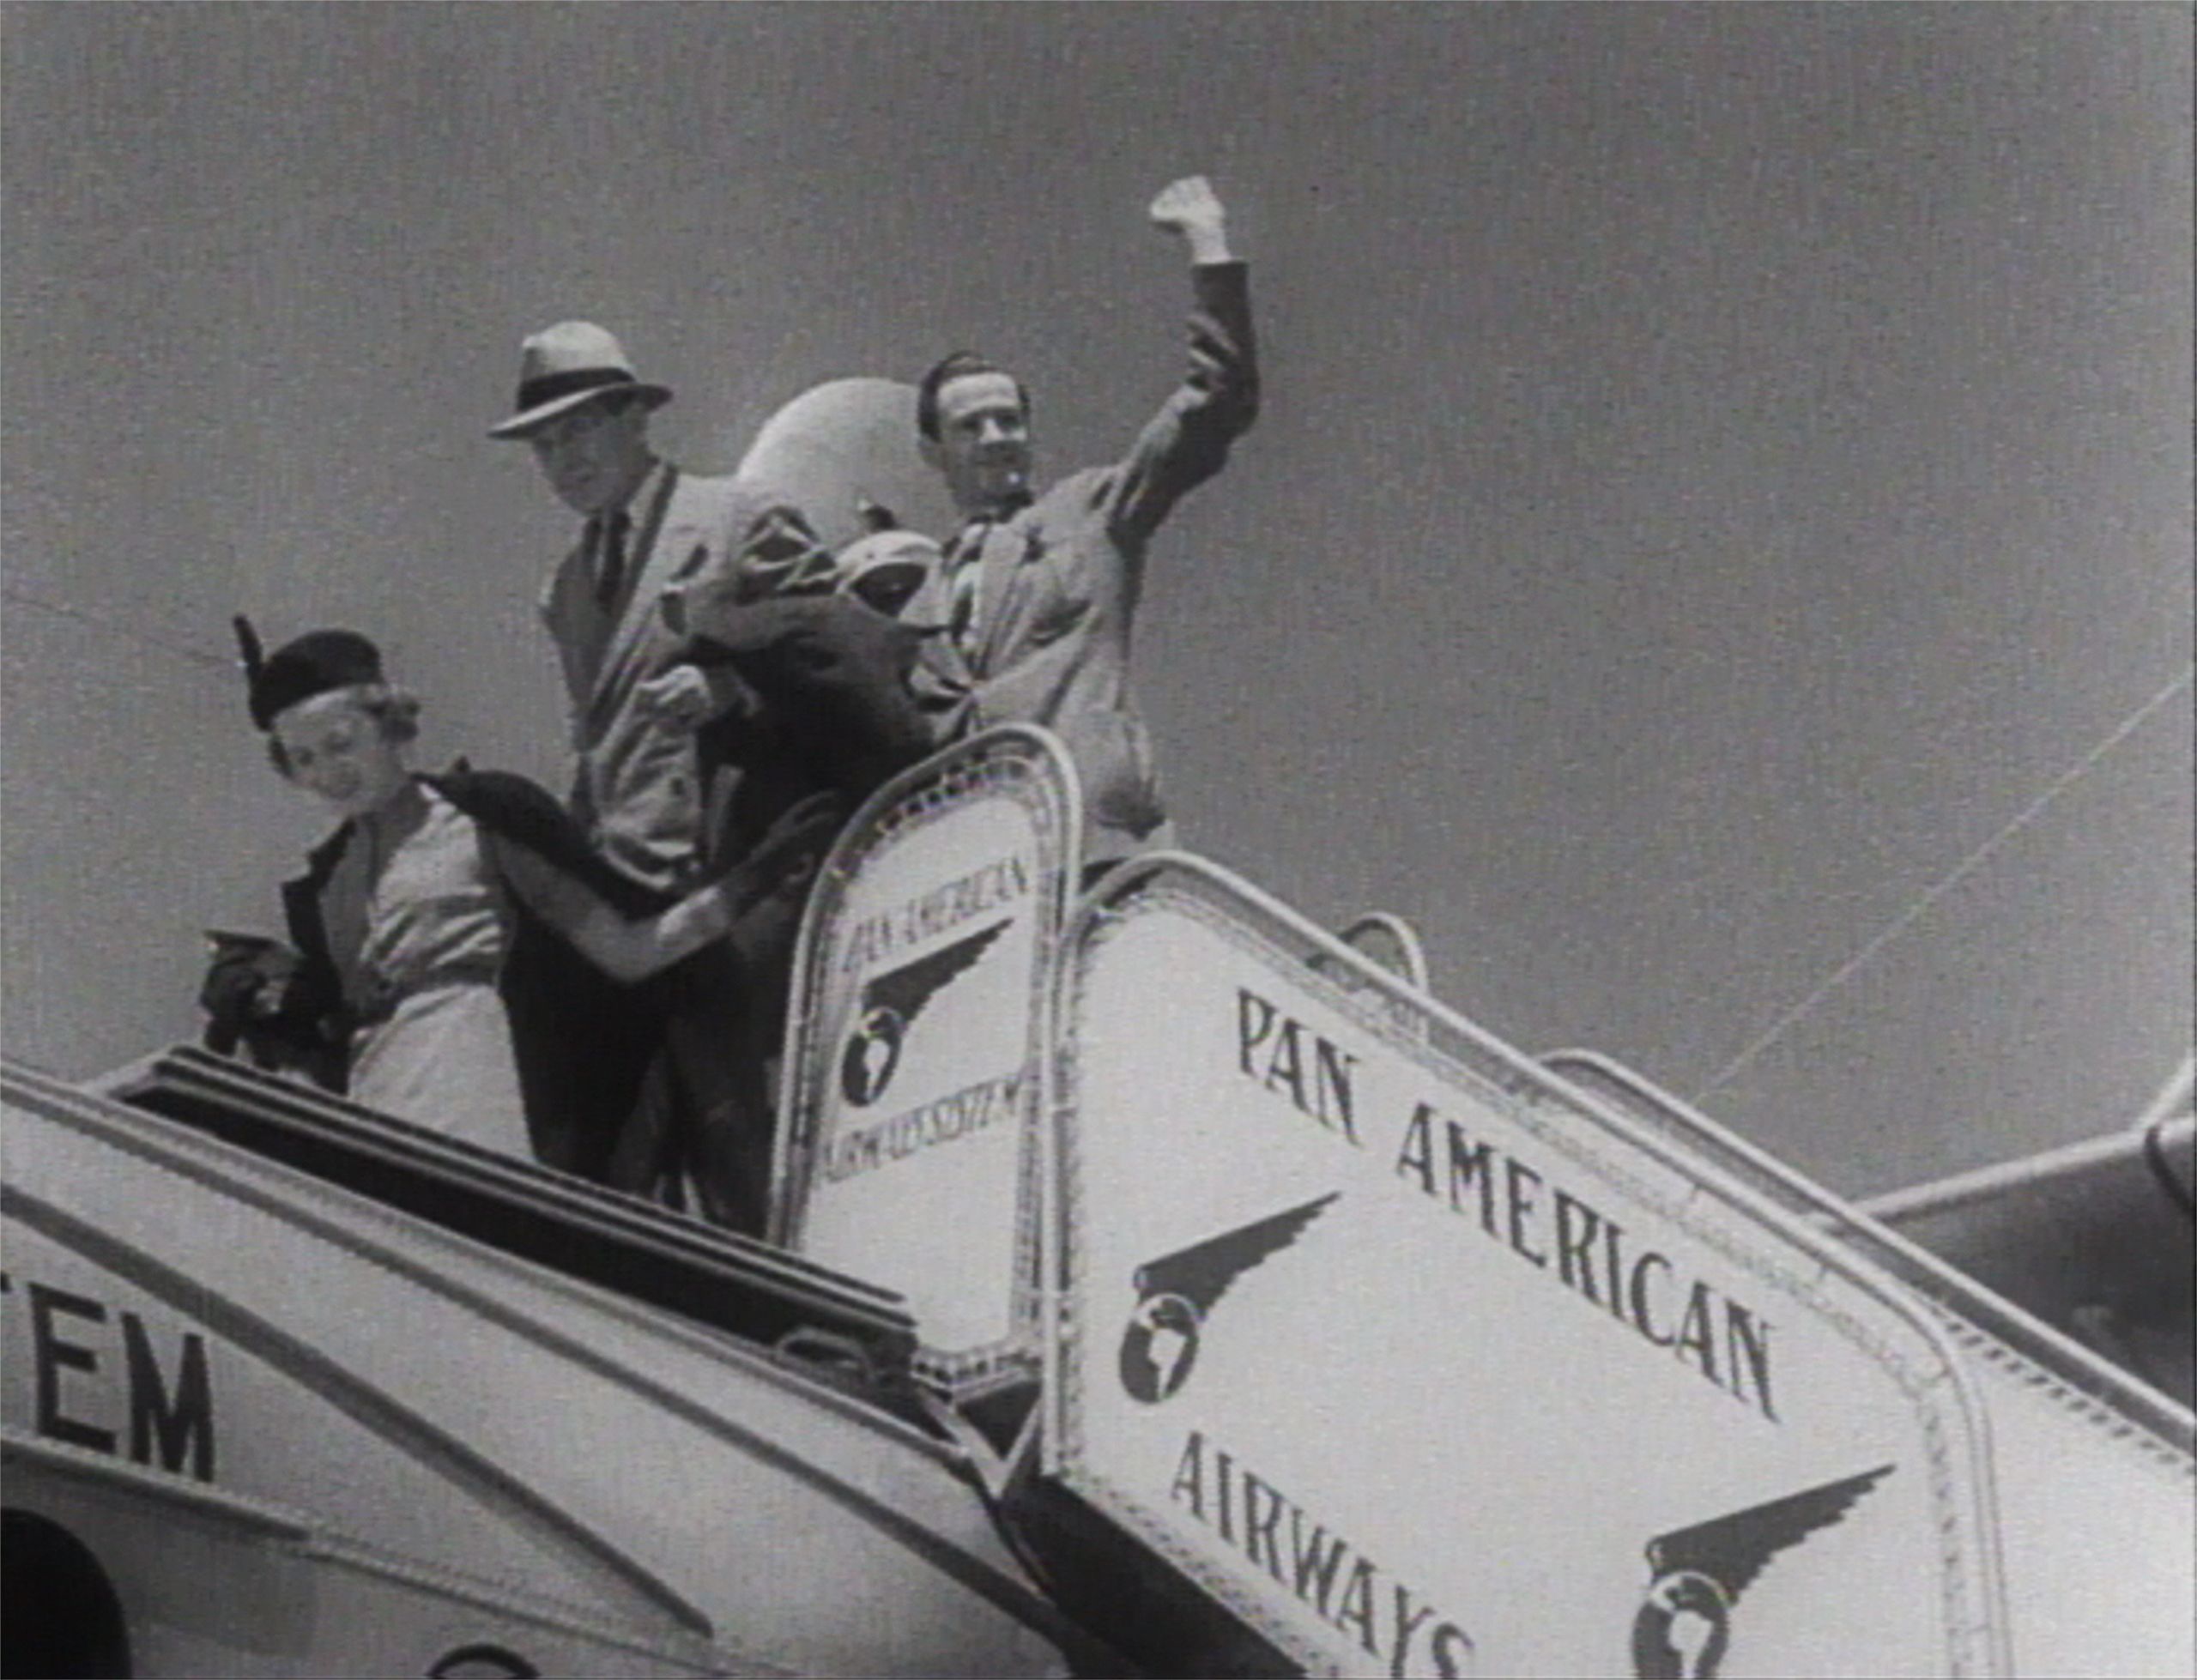 Pan American Airways Film, "Five Hours to Bermuda."